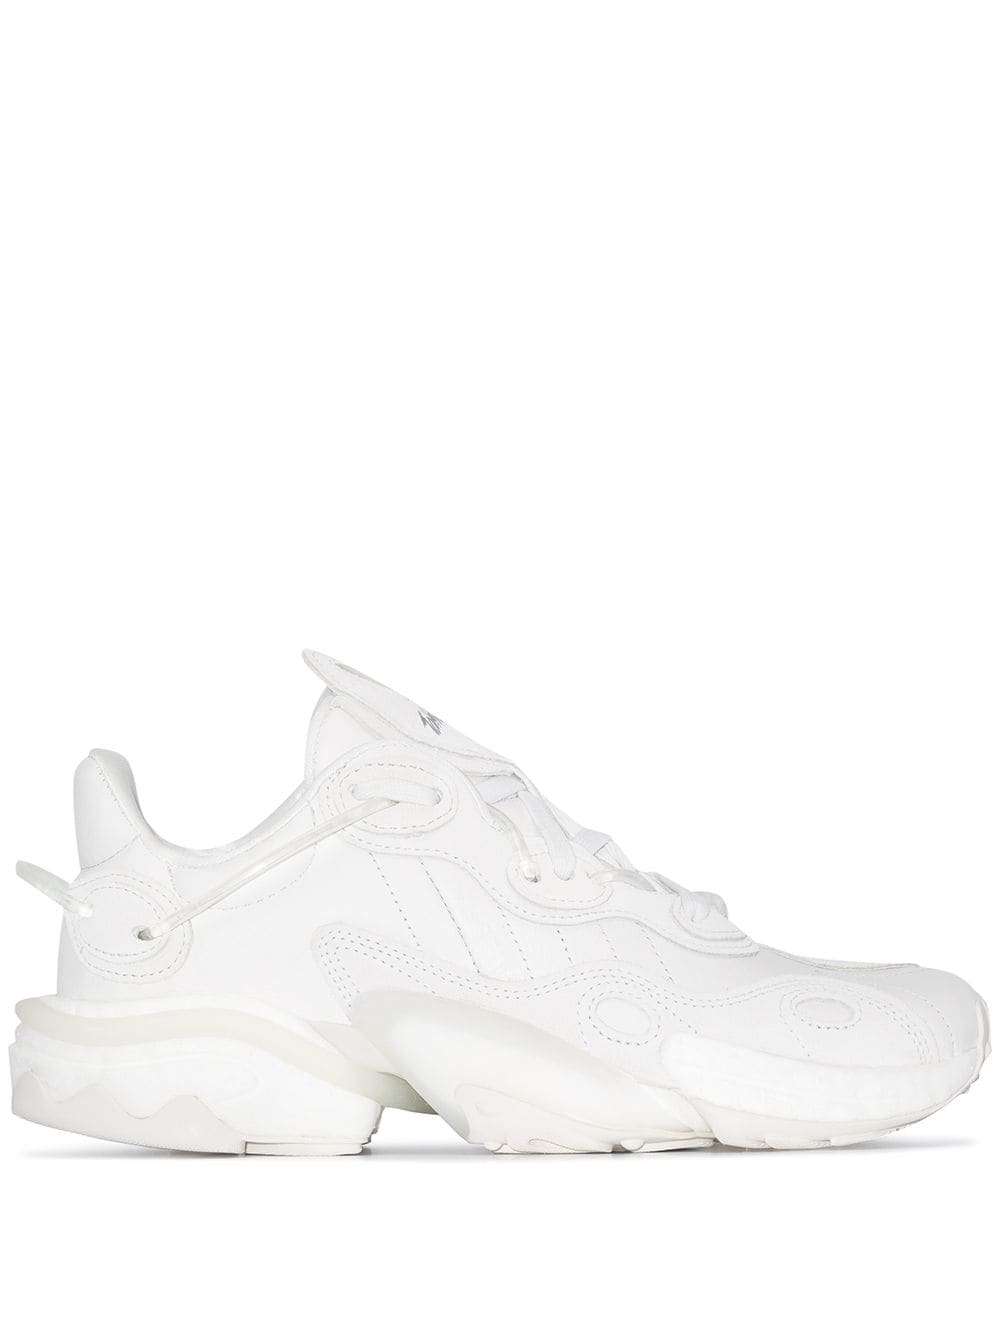 chunky white adidas